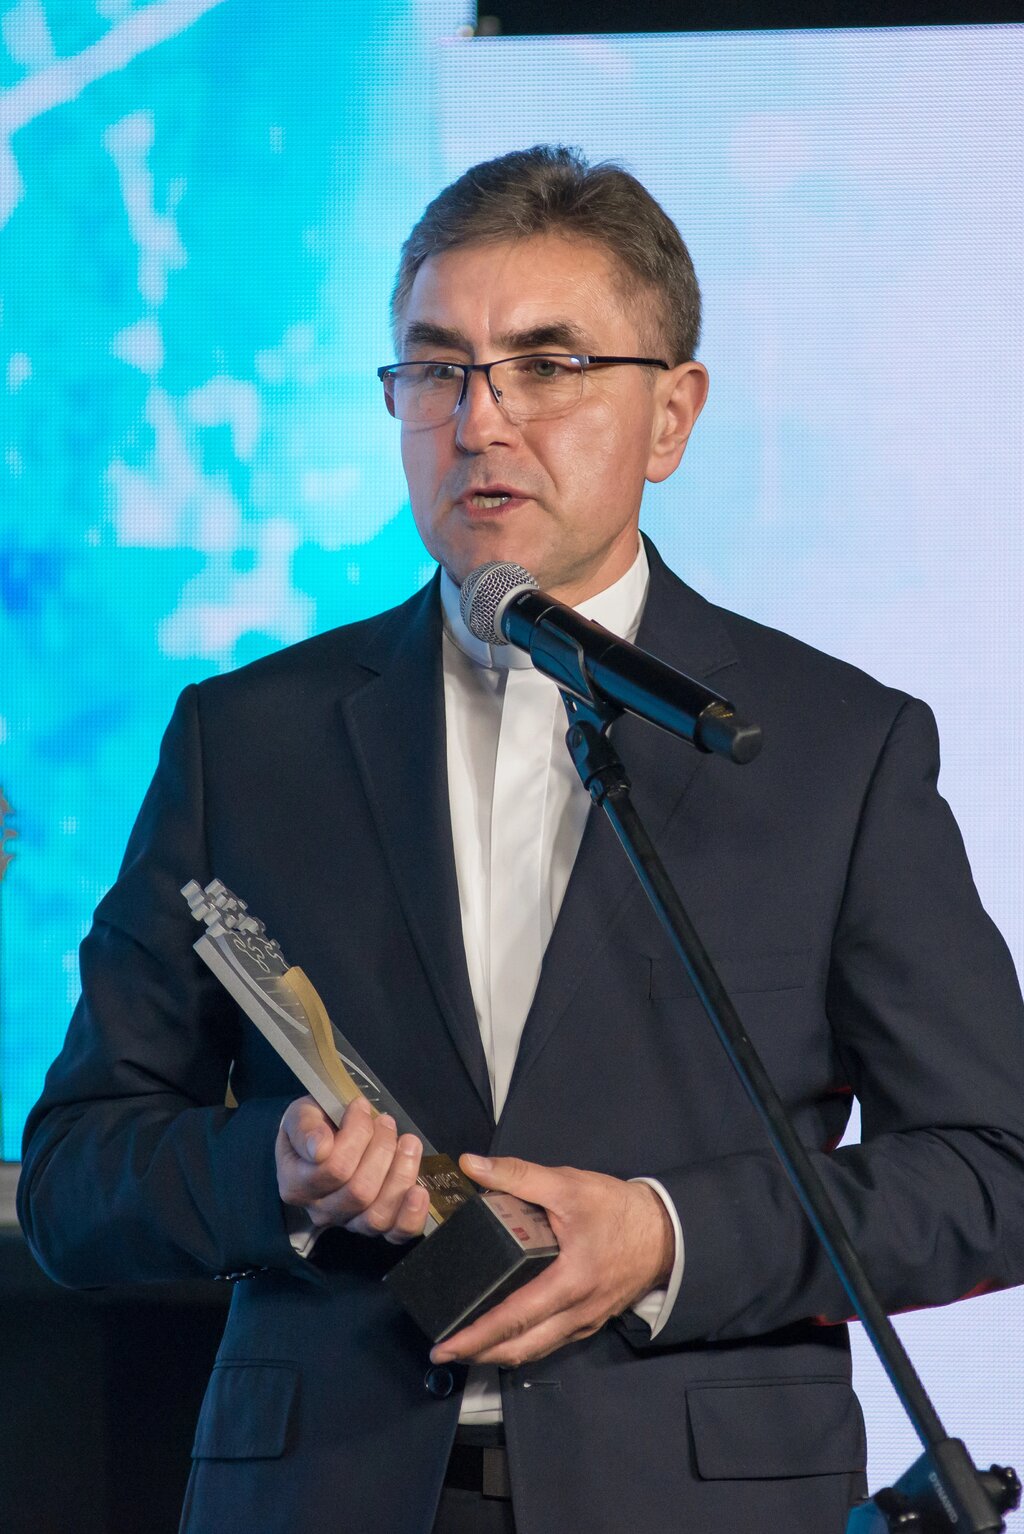 Ks. Prof. Stanisław Dziekoński